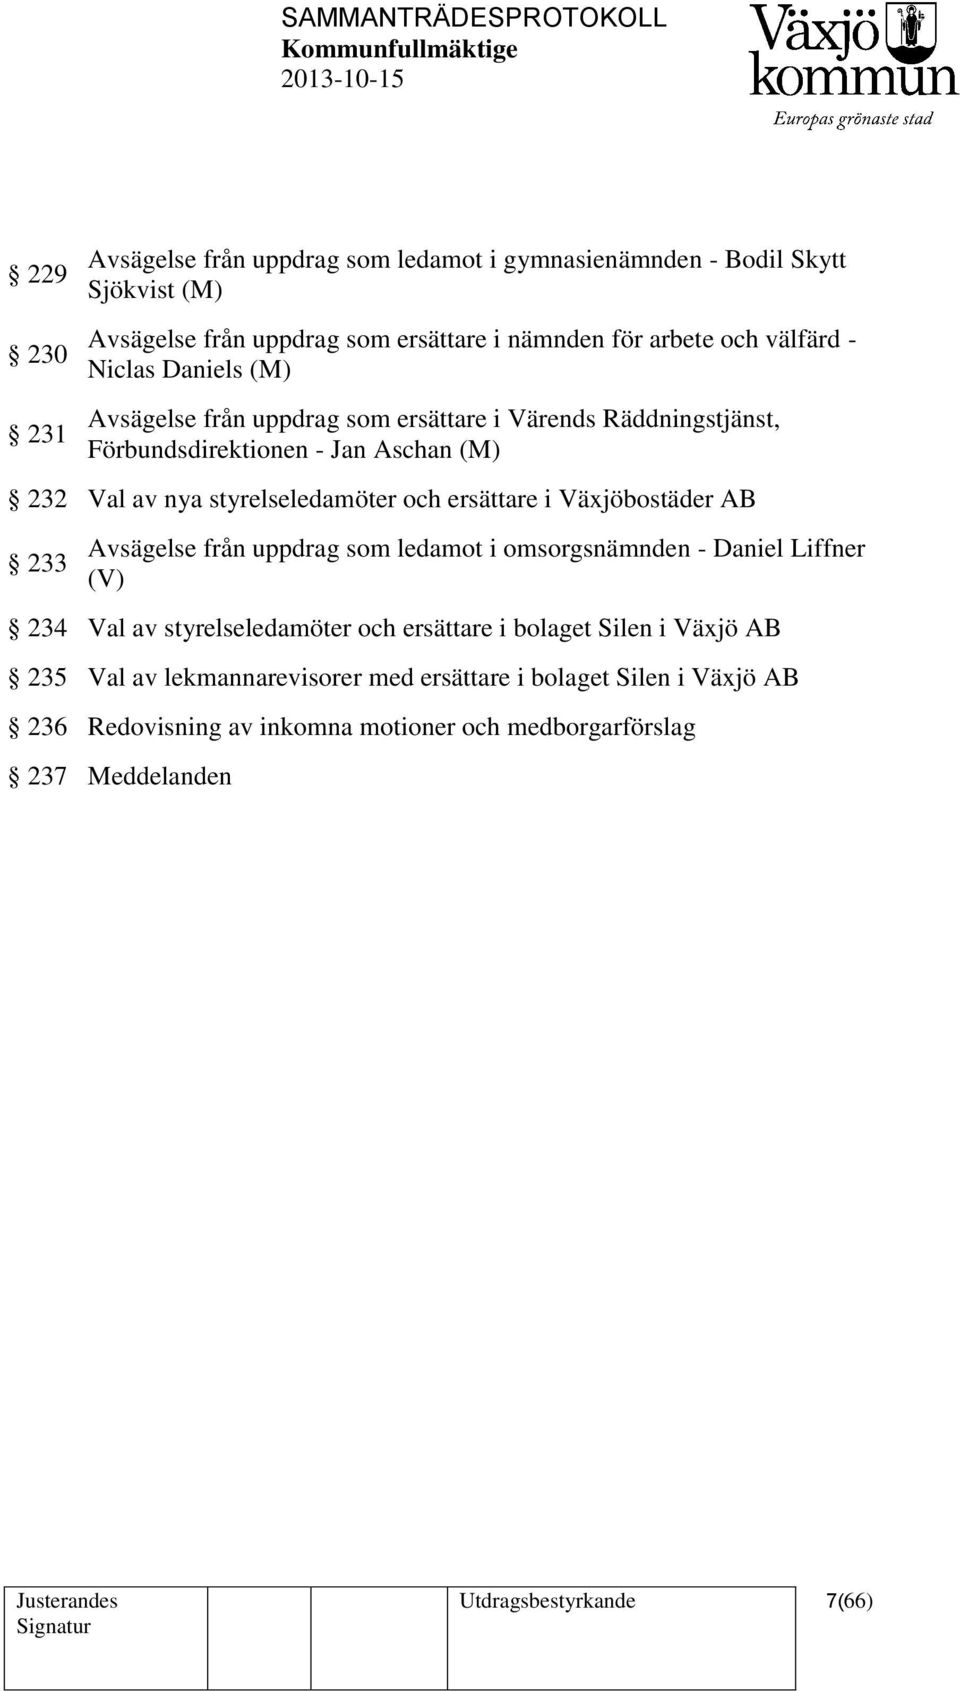 ersättare i Växjöbostäder AB 233 Avsägelse från uppdrag som ledamot i omsorgsnämnden - Daniel Liffner (V) 234 Val av styrelseledamöter och ersättare i bolaget Silen